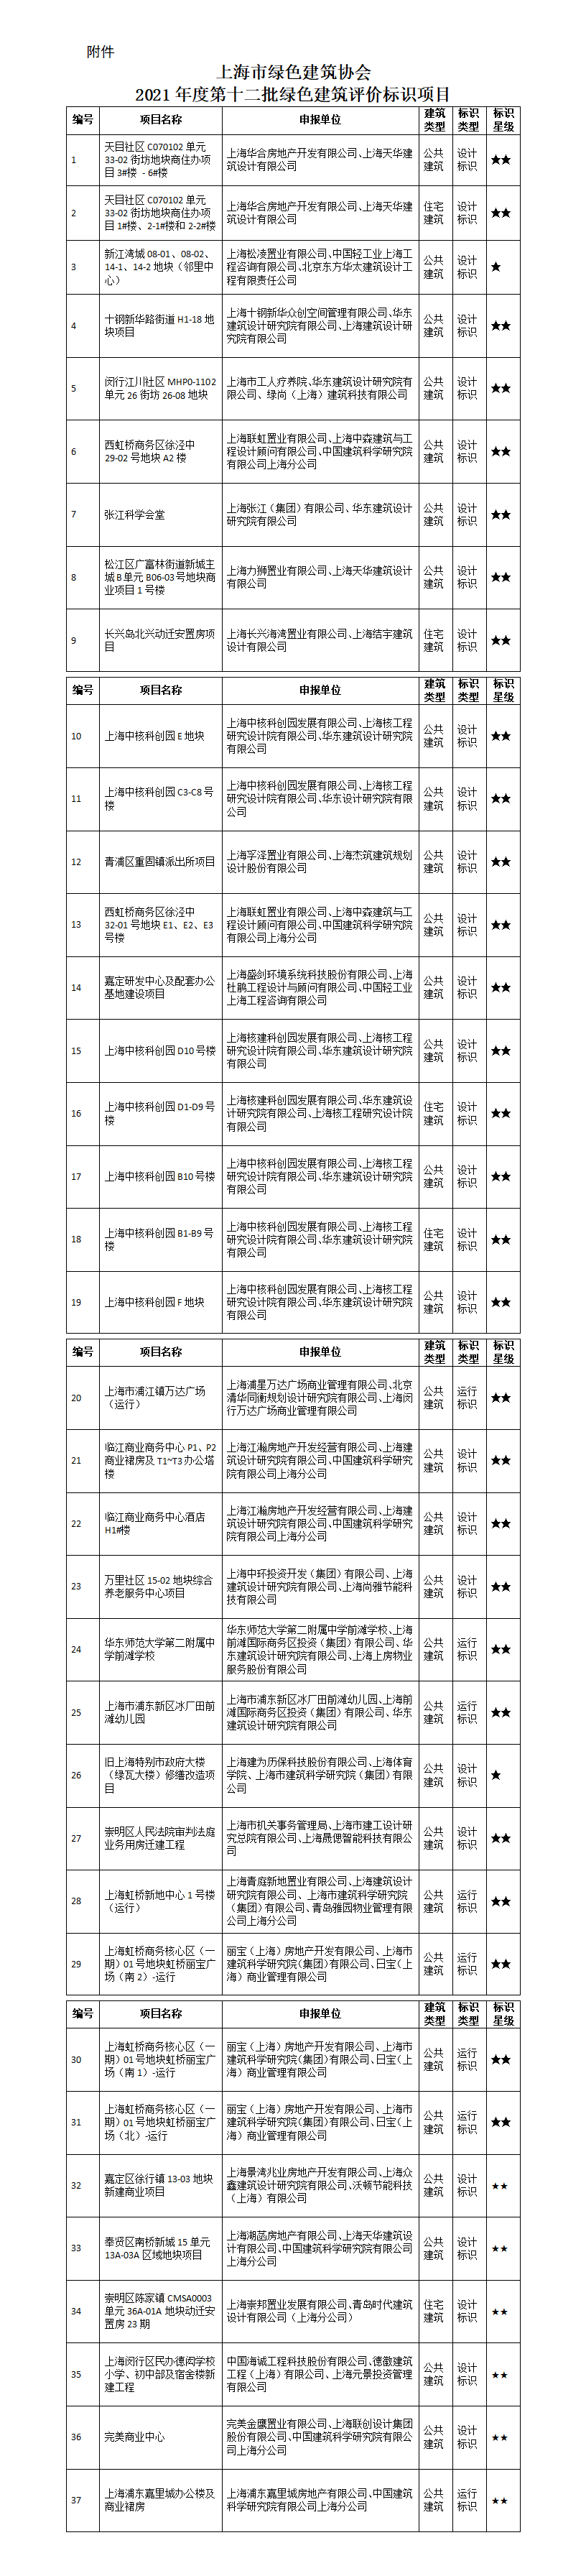 上海市绿色建筑协会 关于2021年度第十二批绿色建筑评价标识项目的公告